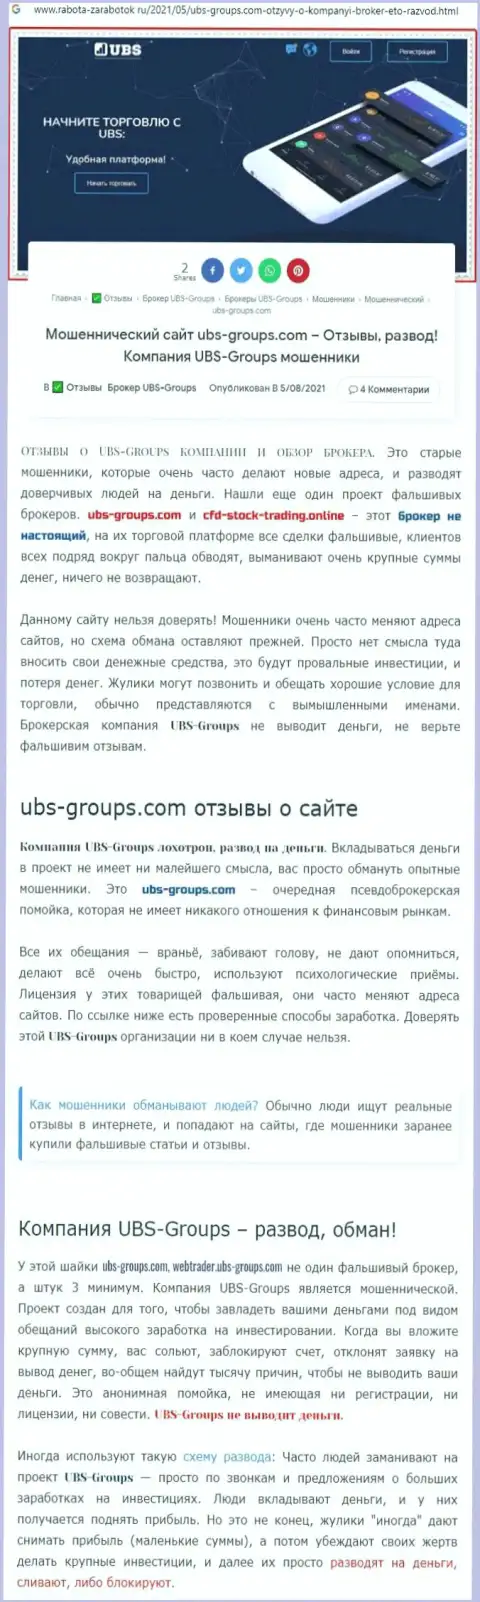 Подробный разбор моделей грабежа UBS-Groups (статья с разбором)